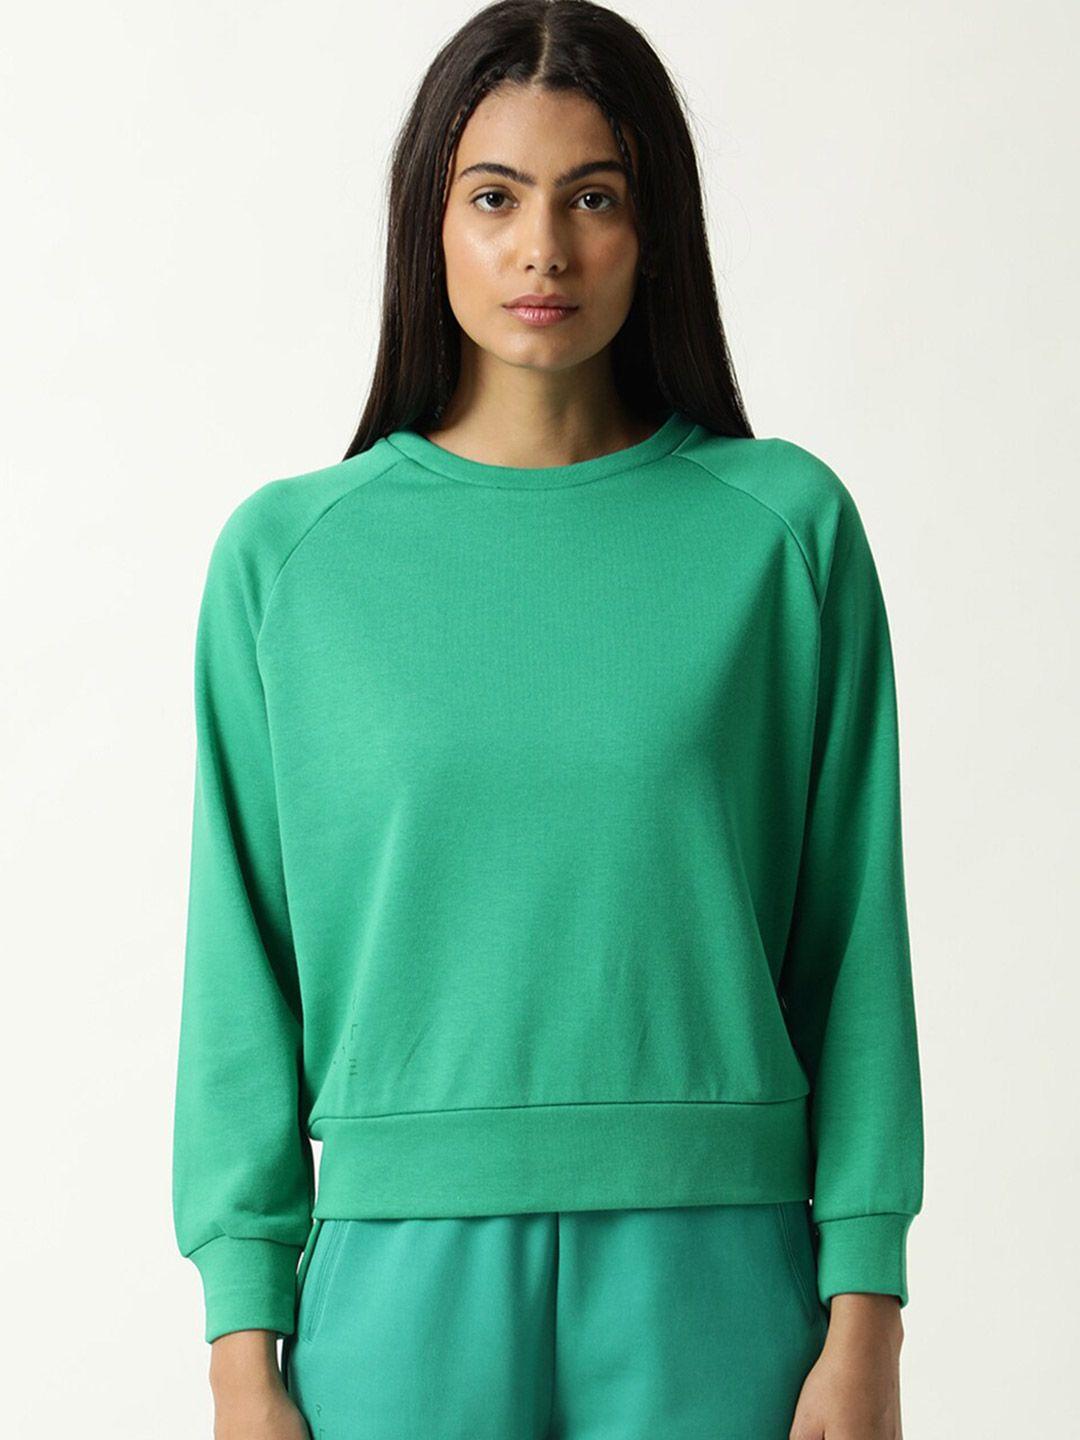 articale women green sweatshirt